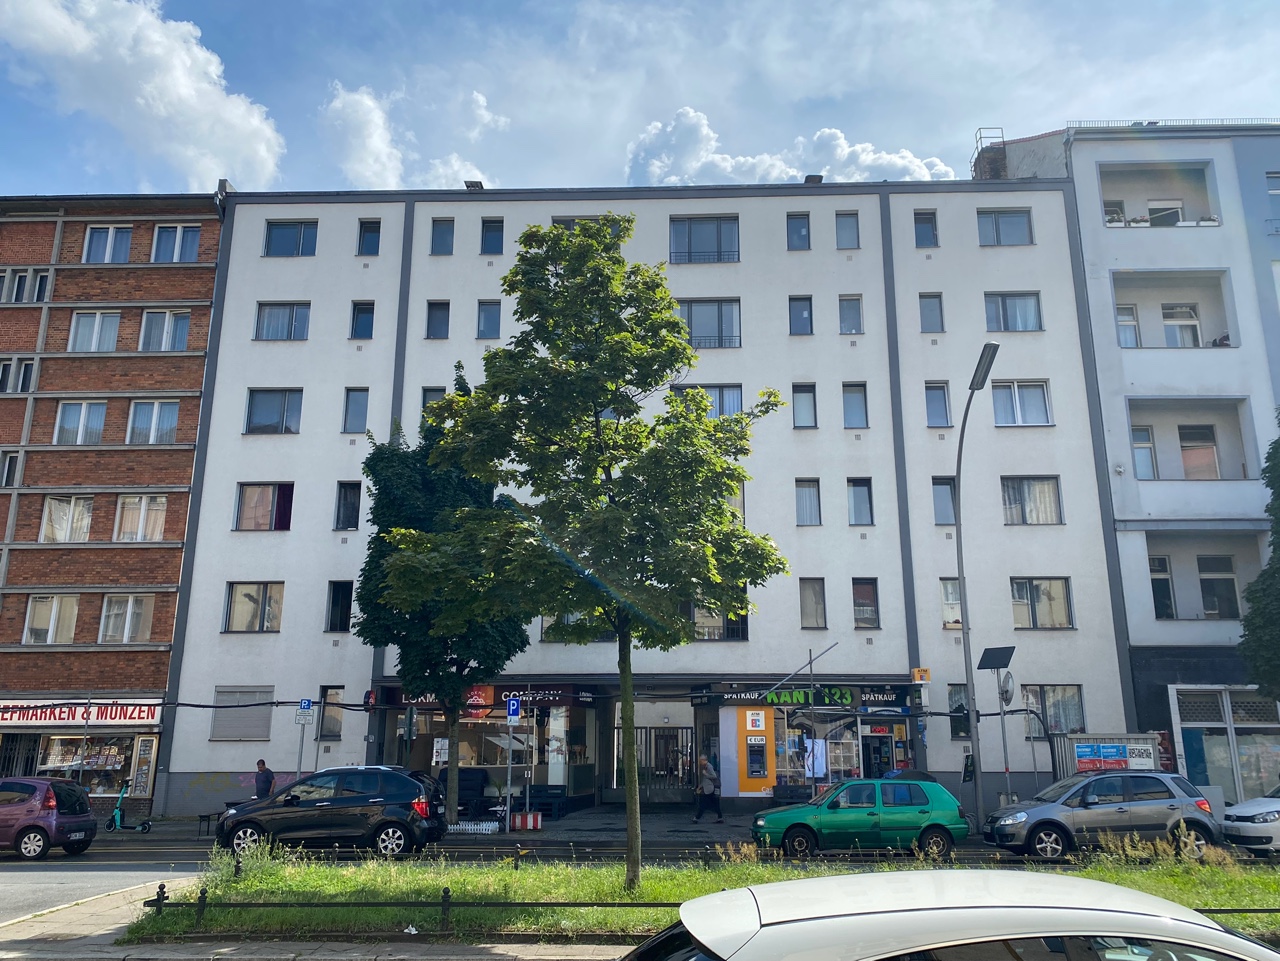 안봉근이 살았던 베를린 칸트스트라세의 아파트. 리모델링은 됐지만 예전 건물 그대로라고 한다.